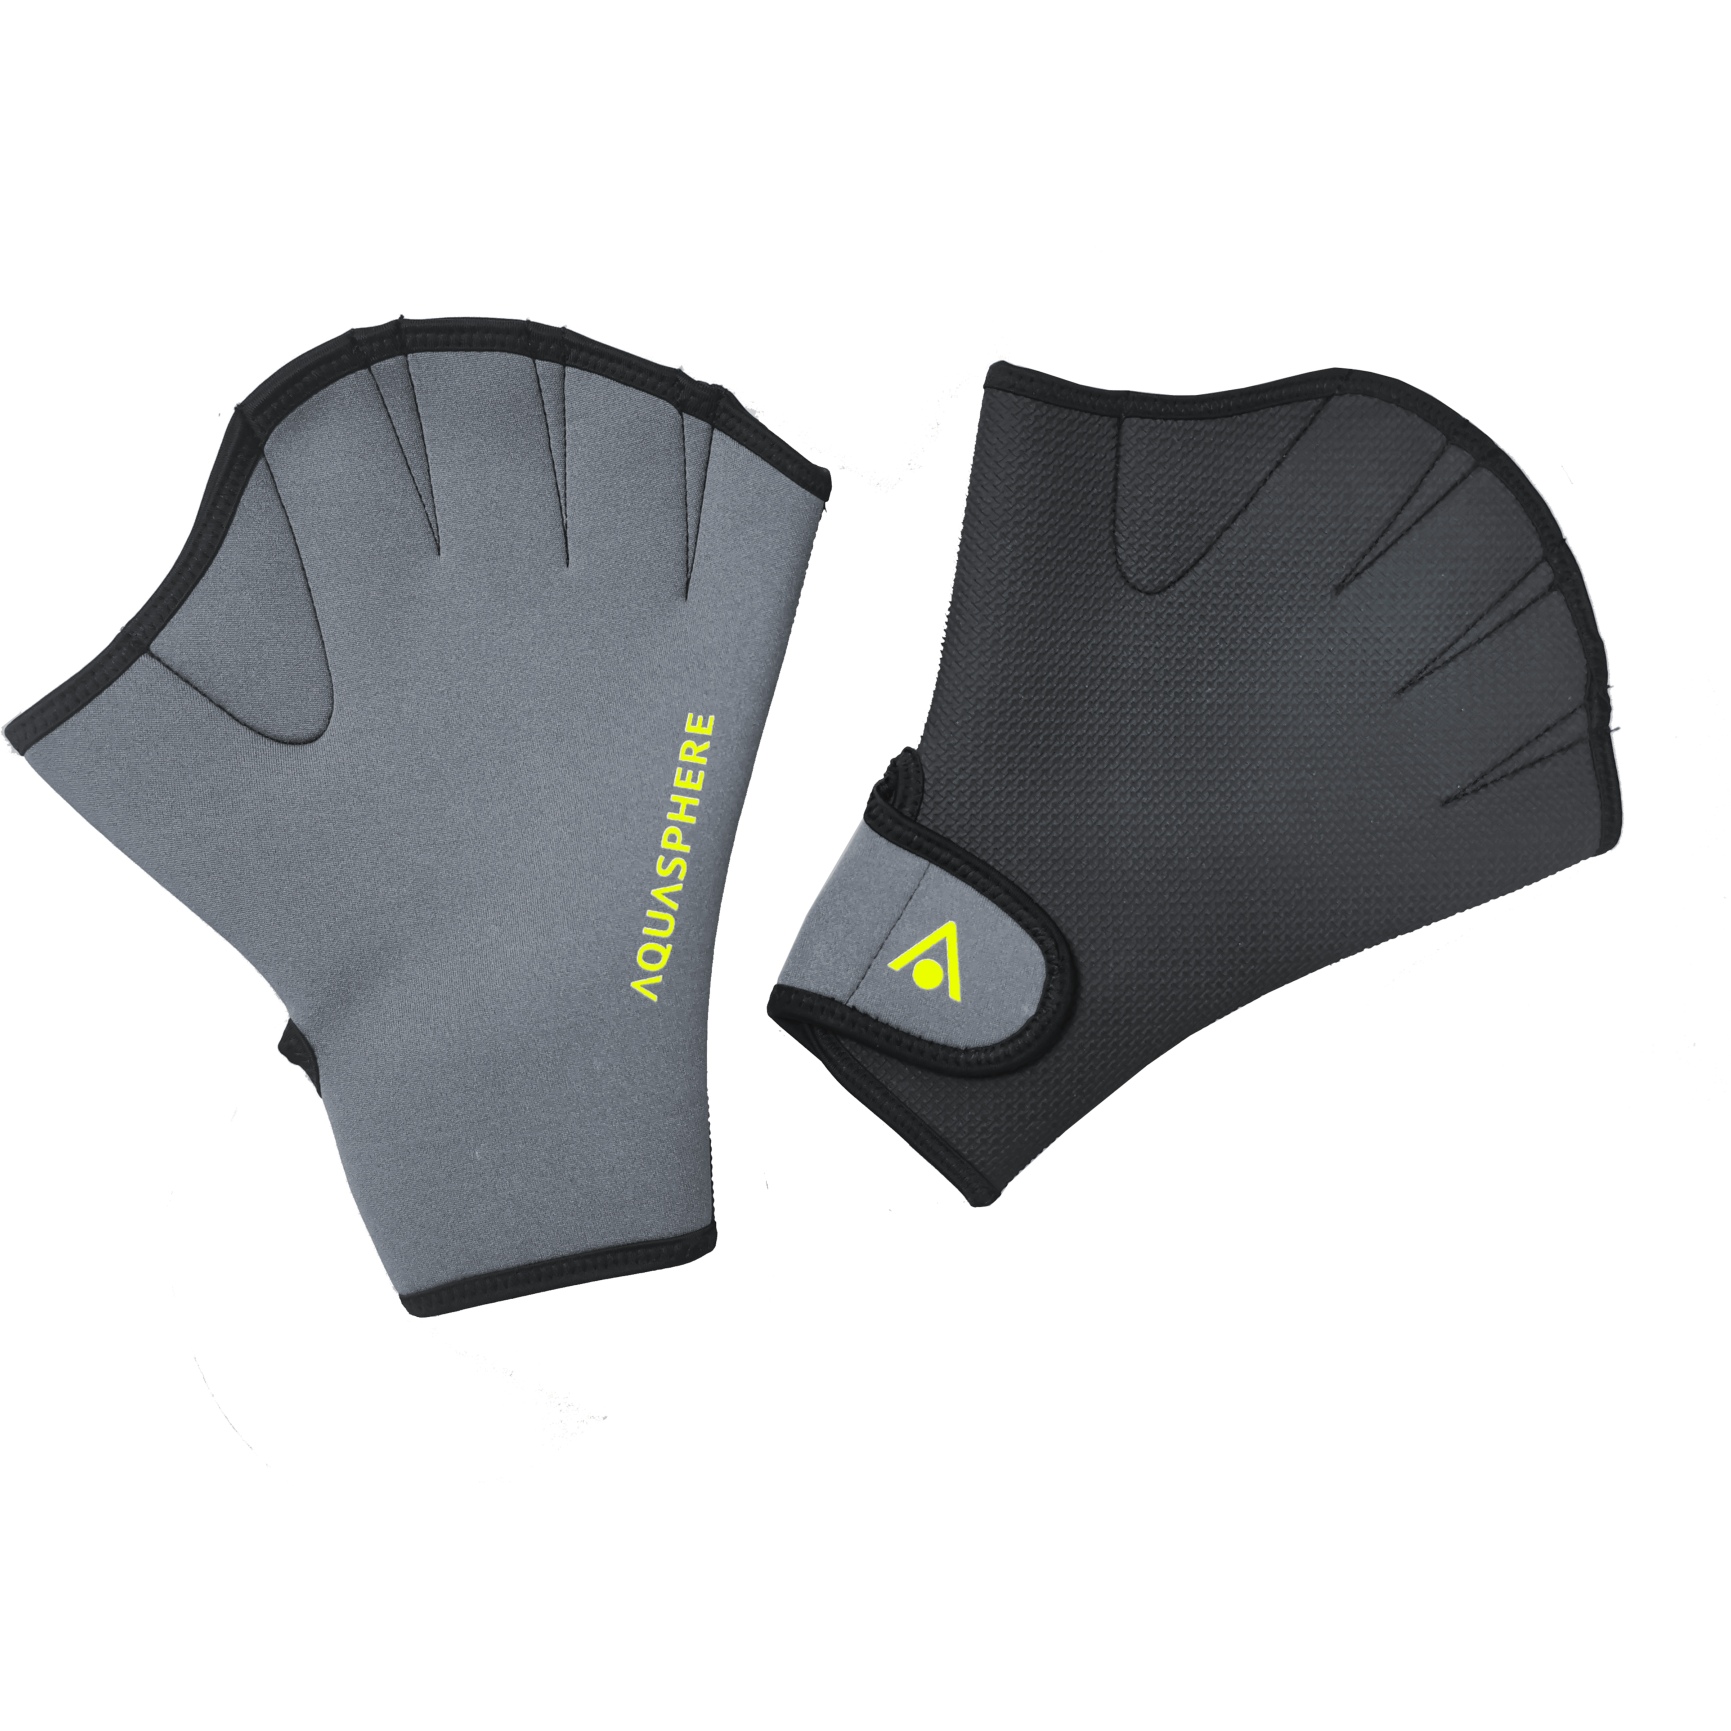 Productfoto van AQUASPHERE Swim Gloves Zwemhandschoenen - Black/Bright Yellow